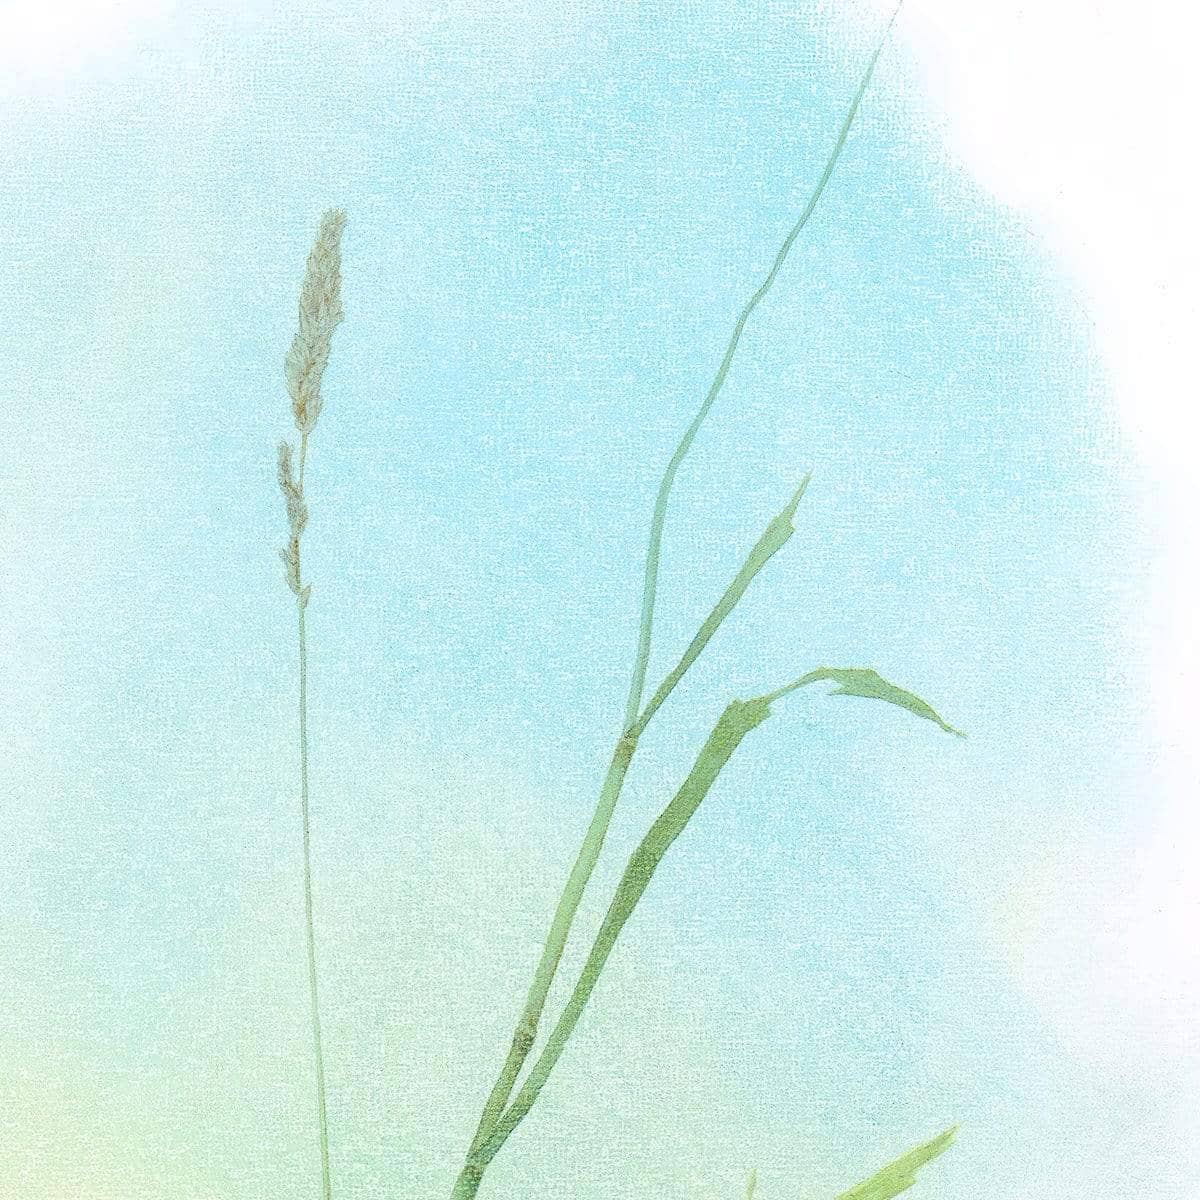 Meadow Lark - Framed Print | Artwork by Glen Loates